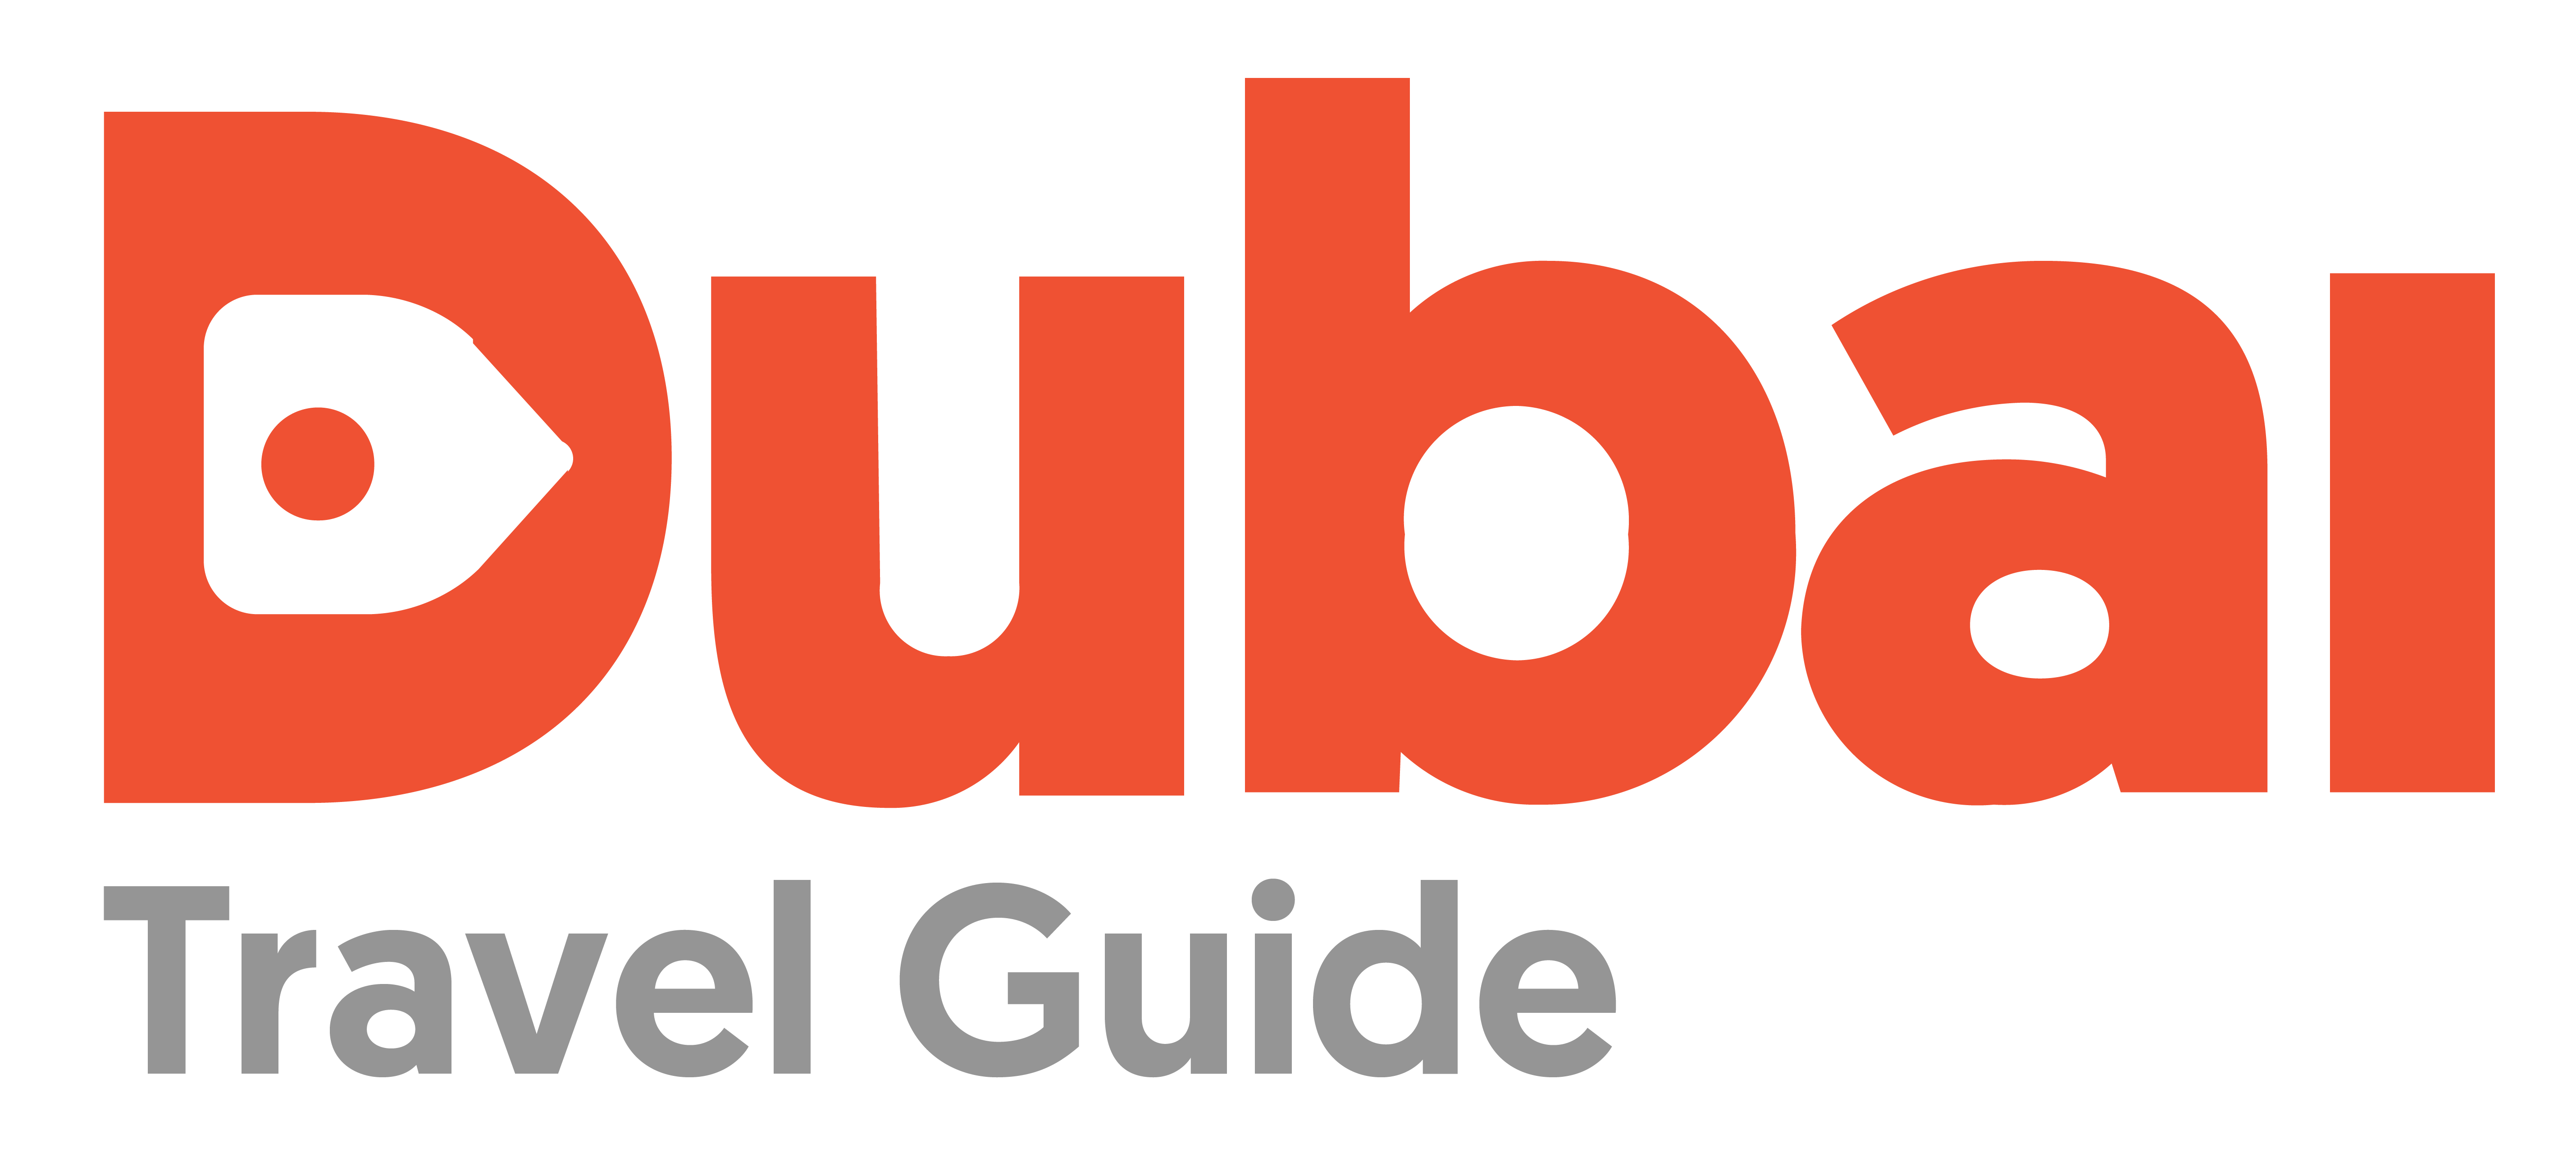 Dubai Travel Guide Logo